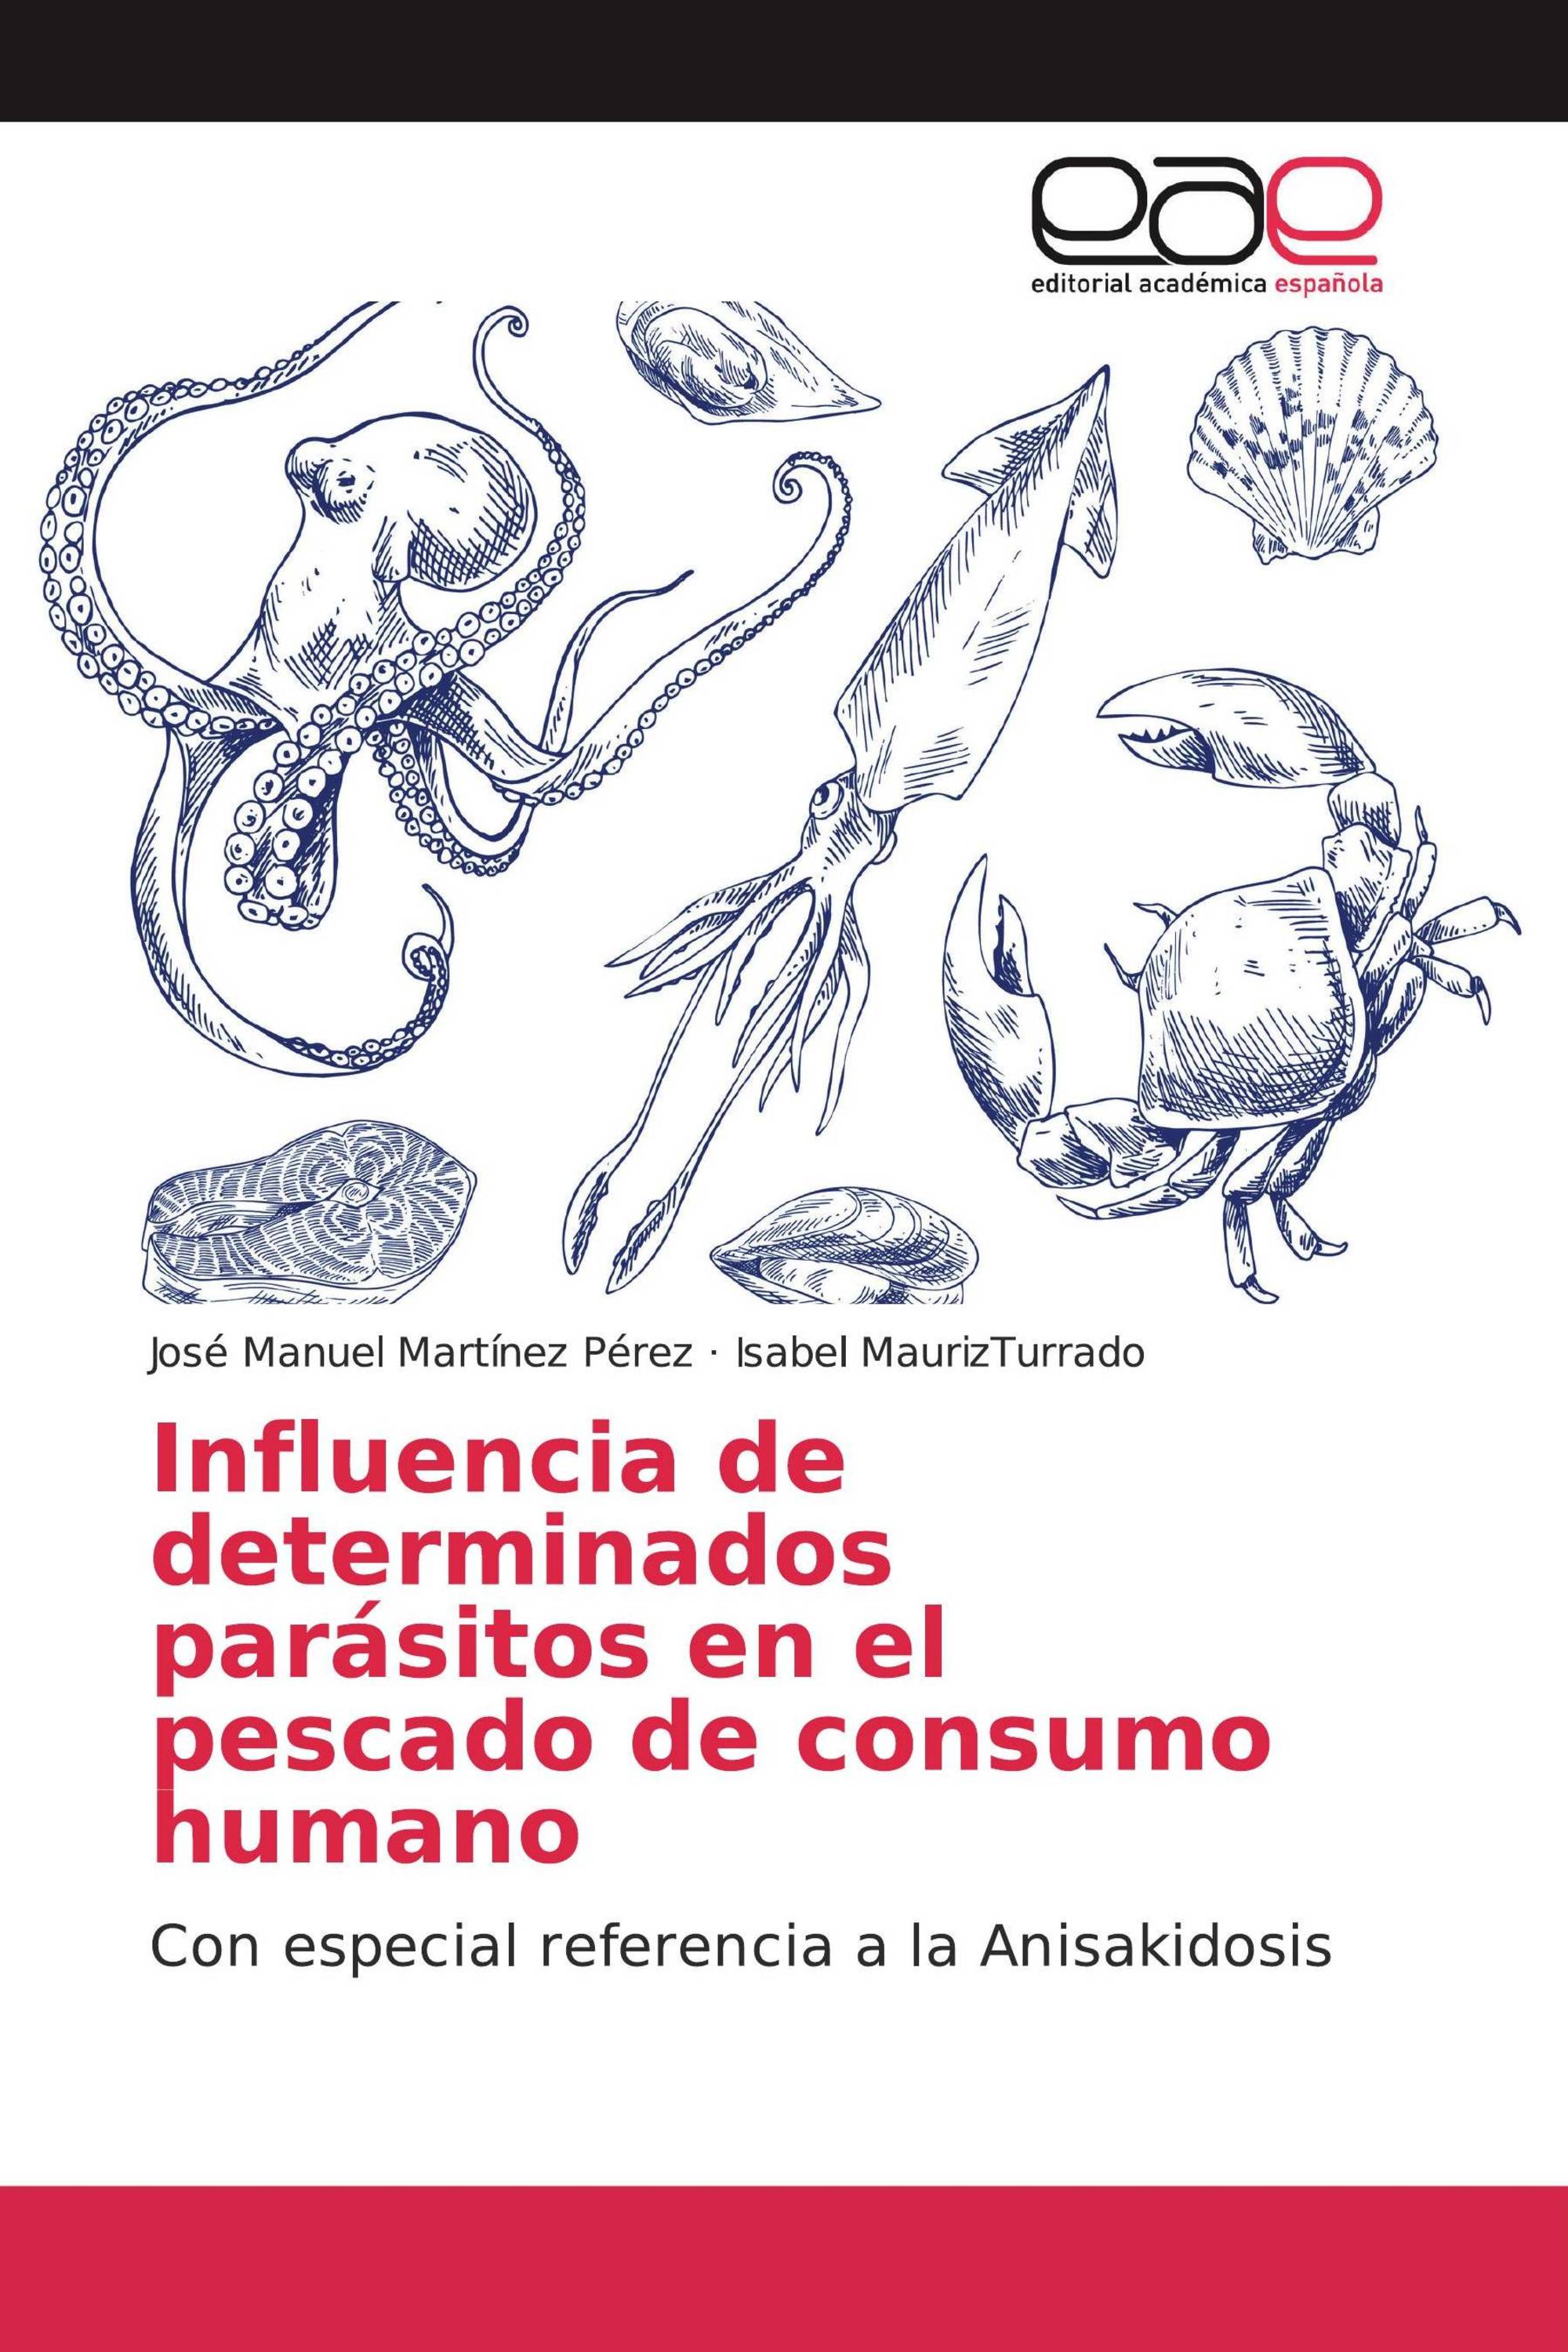 Imagen de portada del libro Influencia de determinados parásitos en el pescado de consumo humano